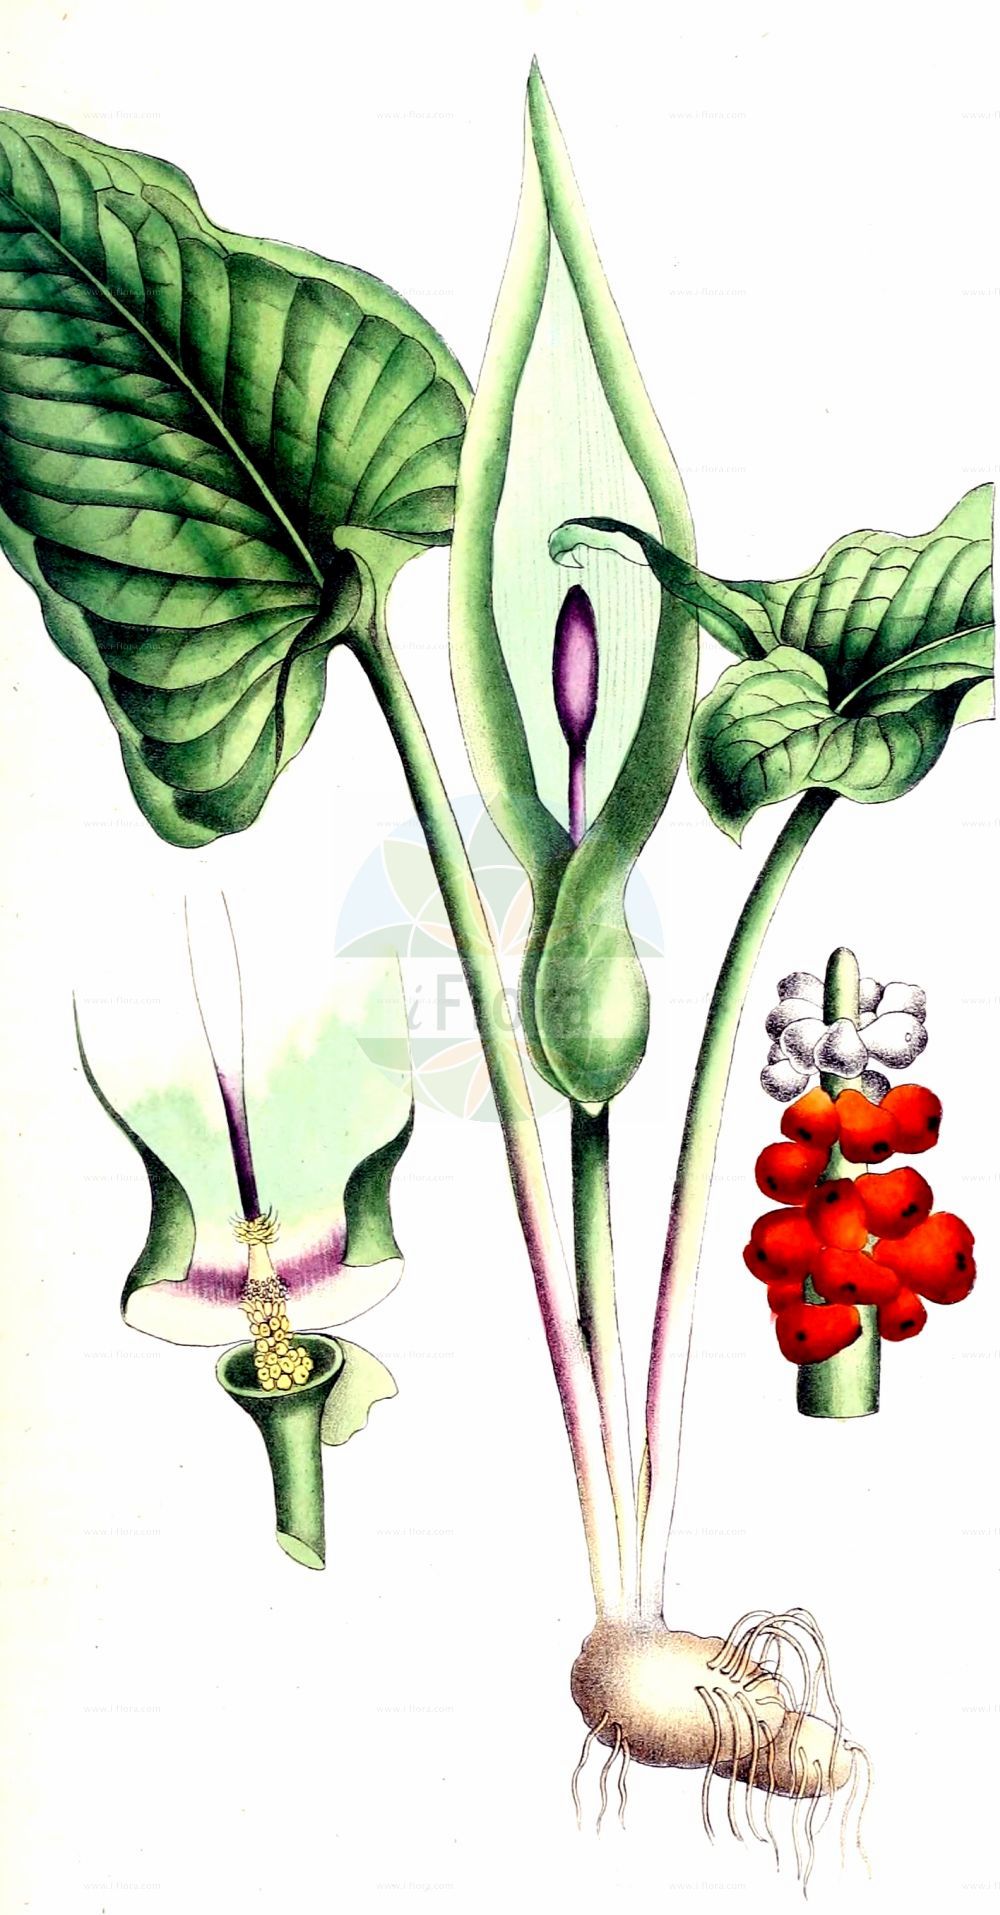 Historische Abbildung von Arum maculatum (Gefleckter Aronstab - Lords-and-Ladies). Das Bild zeigt Blatt, Bluete, Frucht und Same. ---- Historical Drawing of Arum maculatum (Gefleckter Aronstab - Lords-and-Ladies). The image is showing leaf, flower, fruit and seed.(Arum maculatum,Gefleckter Aronstab,Lords-and-Ladies,Arisarum maculatum,Arum gracile,Arum heldreichii,Arum immaculatum,Arum maculatum,Arum malyi,Arum pyrenaeum,Arum trapezuntinum,Arum vernale,Arum vulgare,Arum zelebori,Gefleckter Aronstab,Suedoestlicher Aronstab,Lords-and-Ladies,Arum,Aronstab,Arum Lily,Araceae,Aronstabgewächse,Arum Lily family,Blatt,Bluete,Frucht,Same,leaf,flower,fruit,seed,Dietrich (1833-1844))